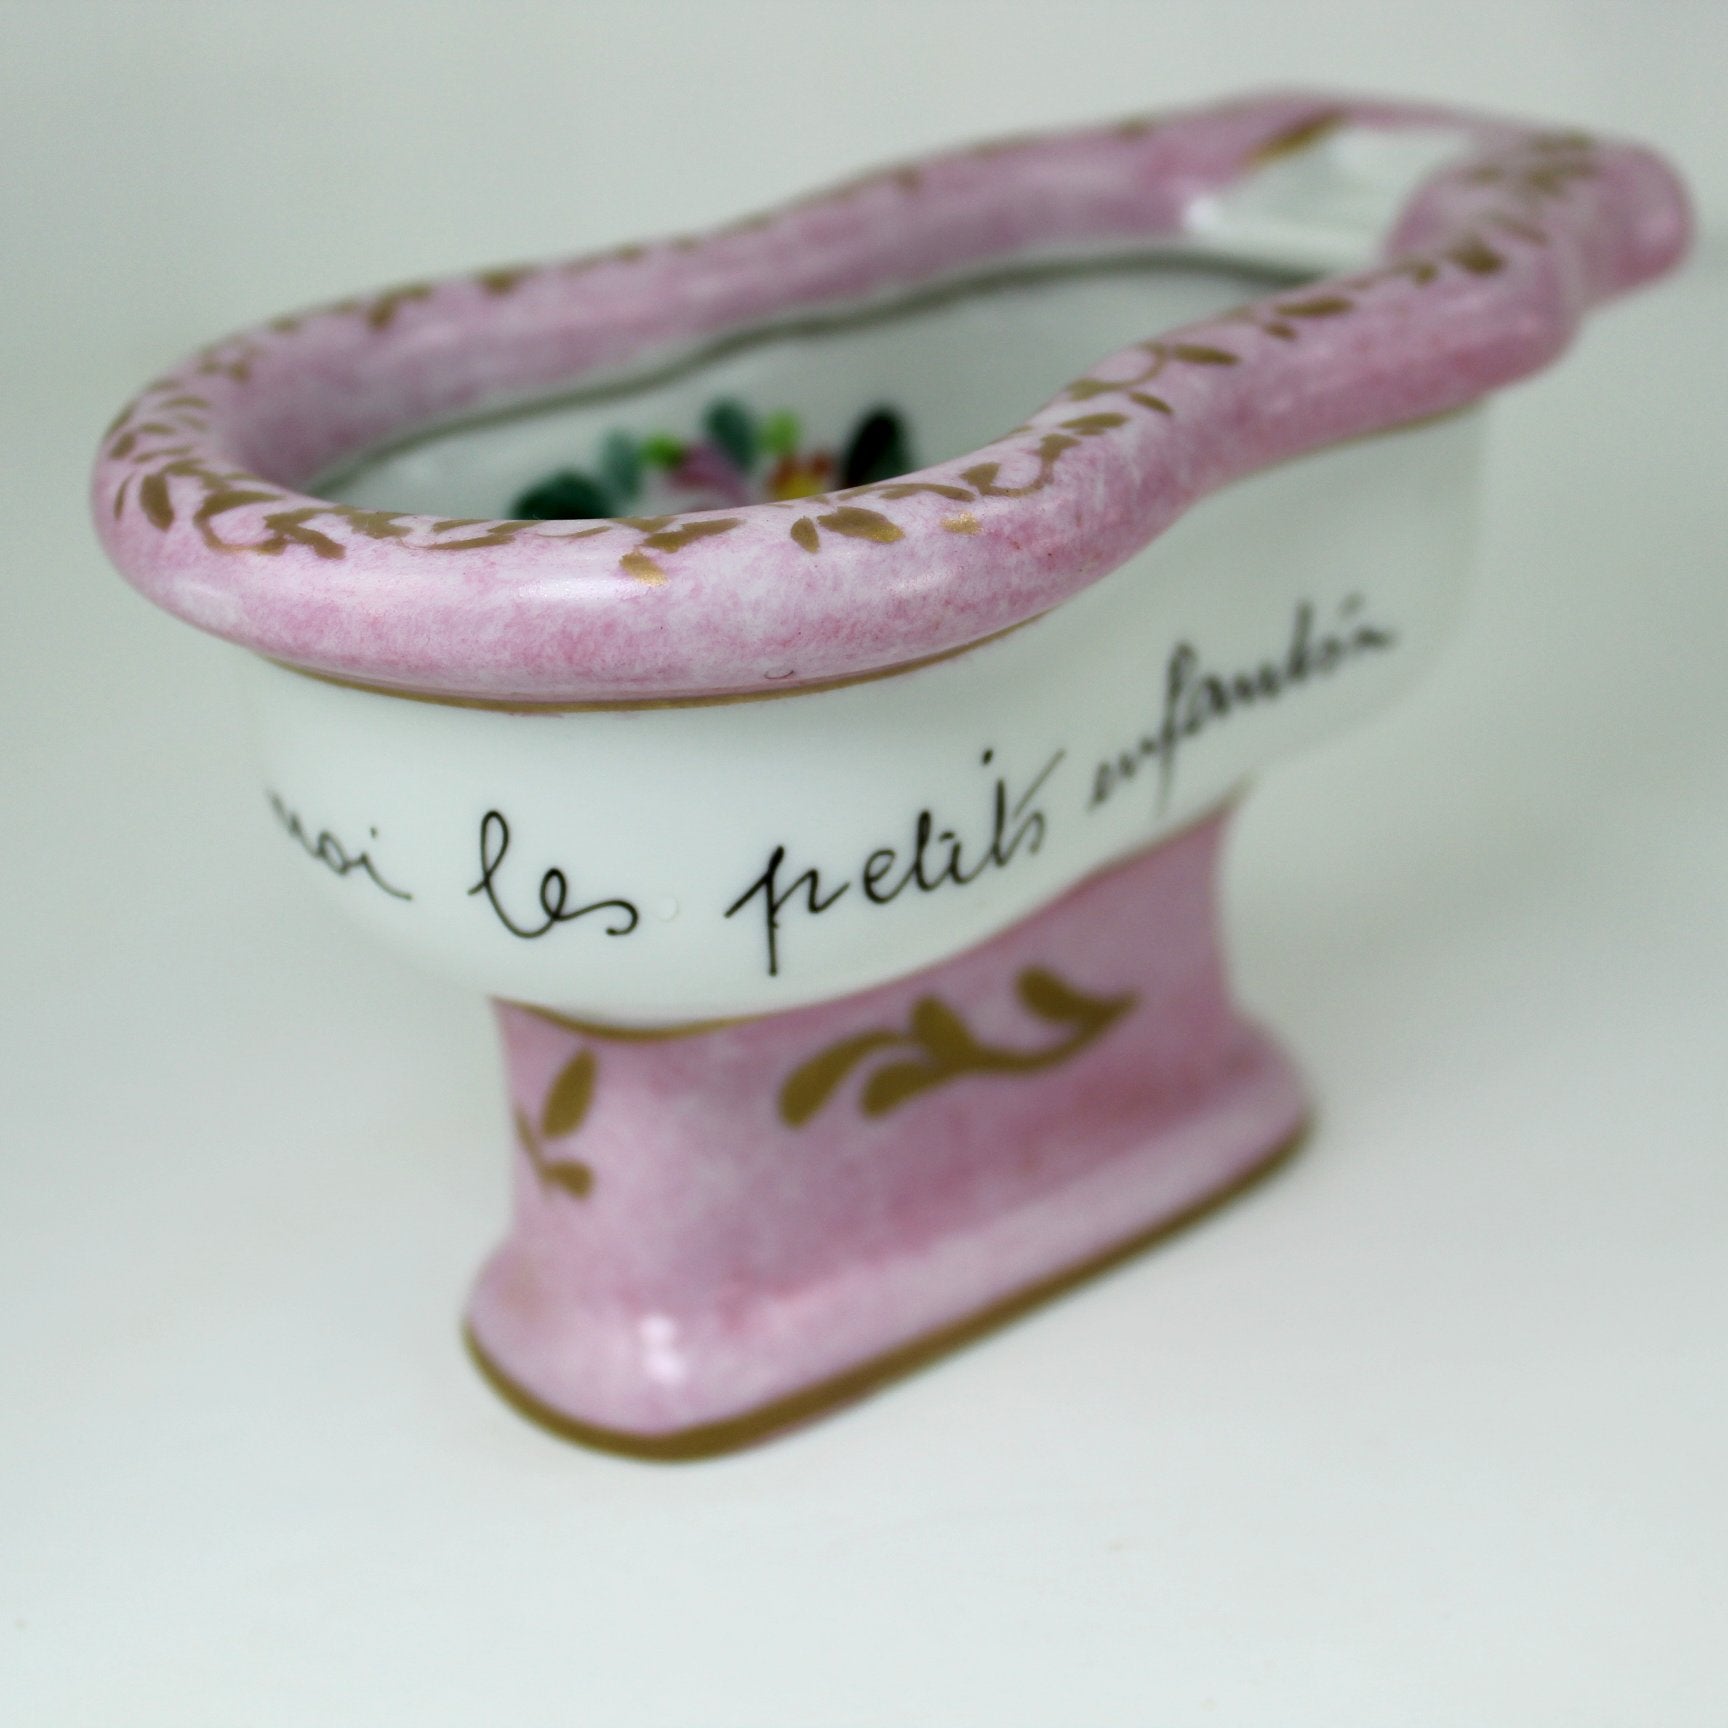 Vintage 1940s Porcelain Baptism Bowl Inscribed "laissez venir à moi les petits enfants"